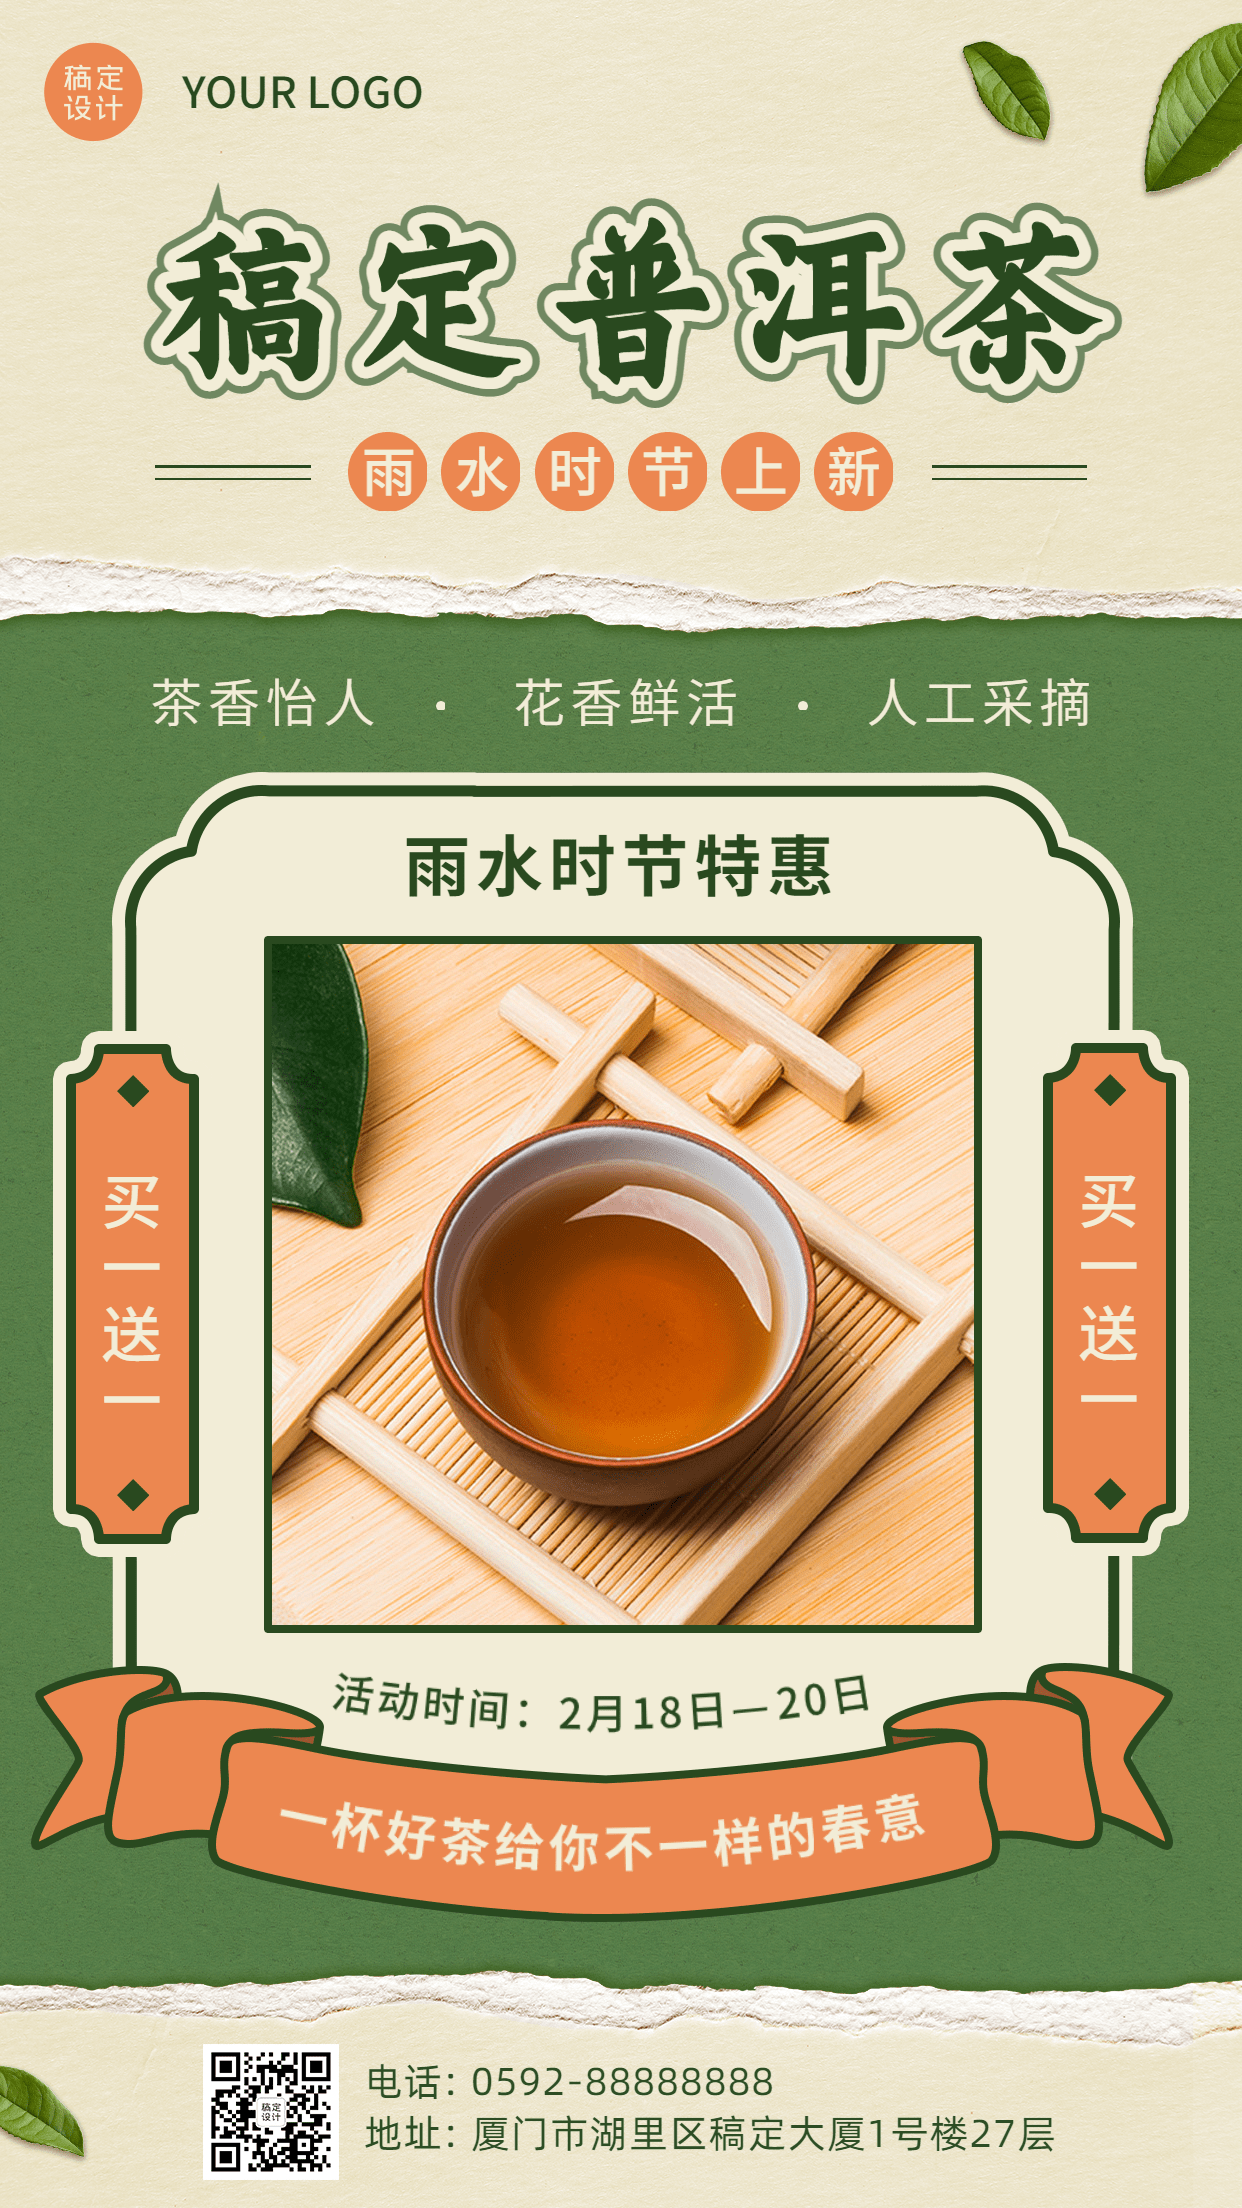 雨水普洱茶产品营销手机海报